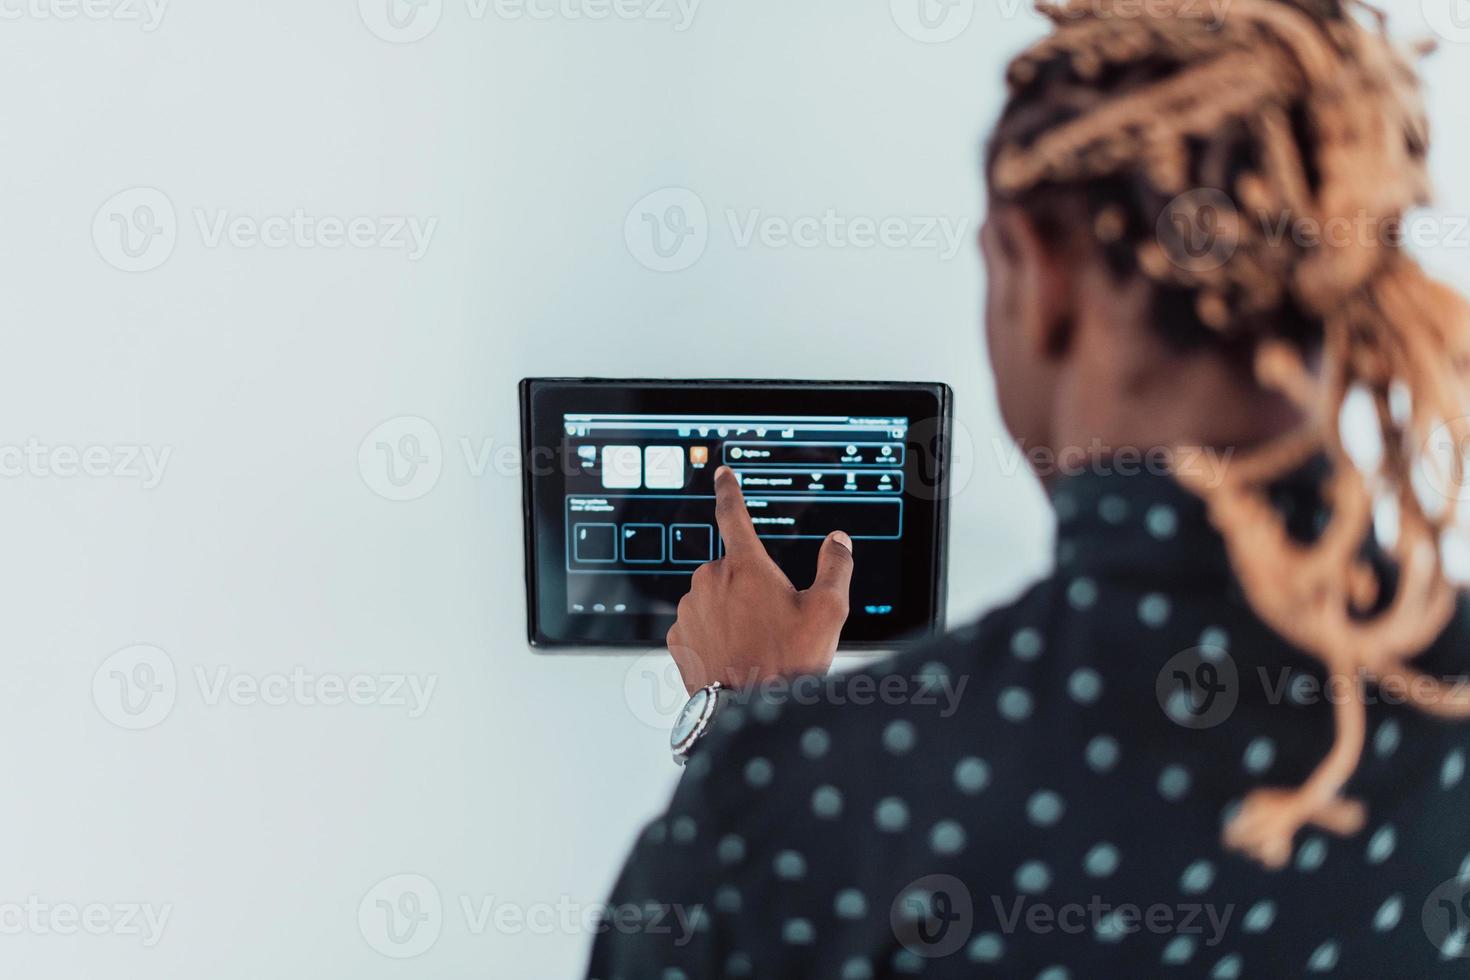 homme afro-américain souriant utilisant un système de maison intelligente moderne, contrôleur sur le mur, jeune homme positif commutant la température sur le thermostat ou activant l'alarme de sécurité dans l'appartement photo